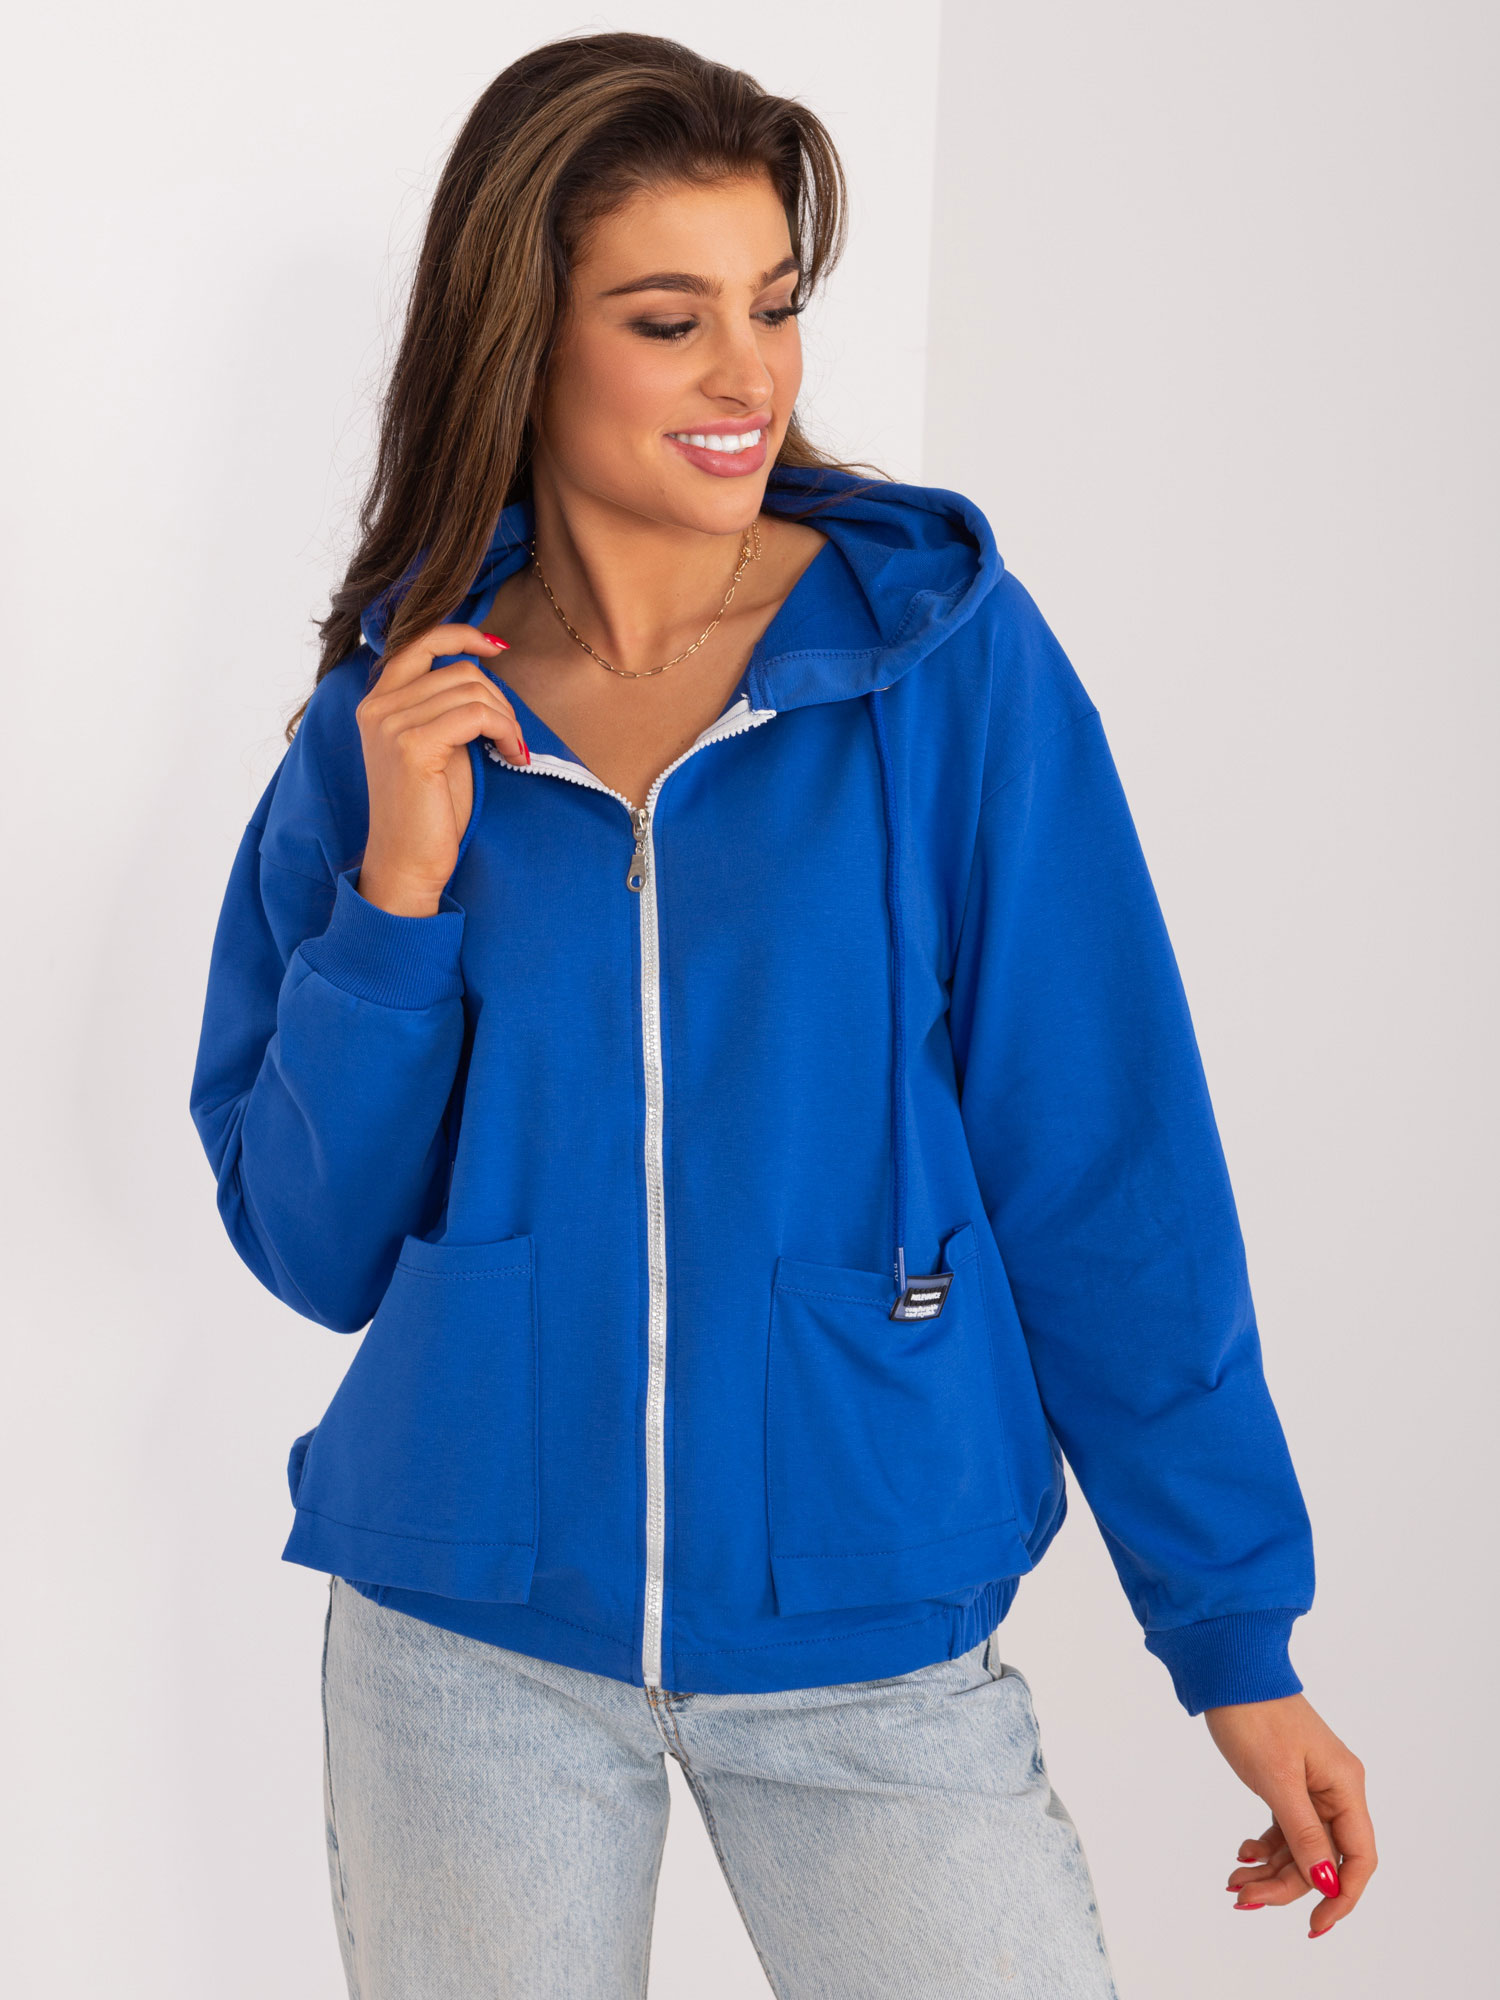 Women's cobalt cotton zip-up sweatshirt